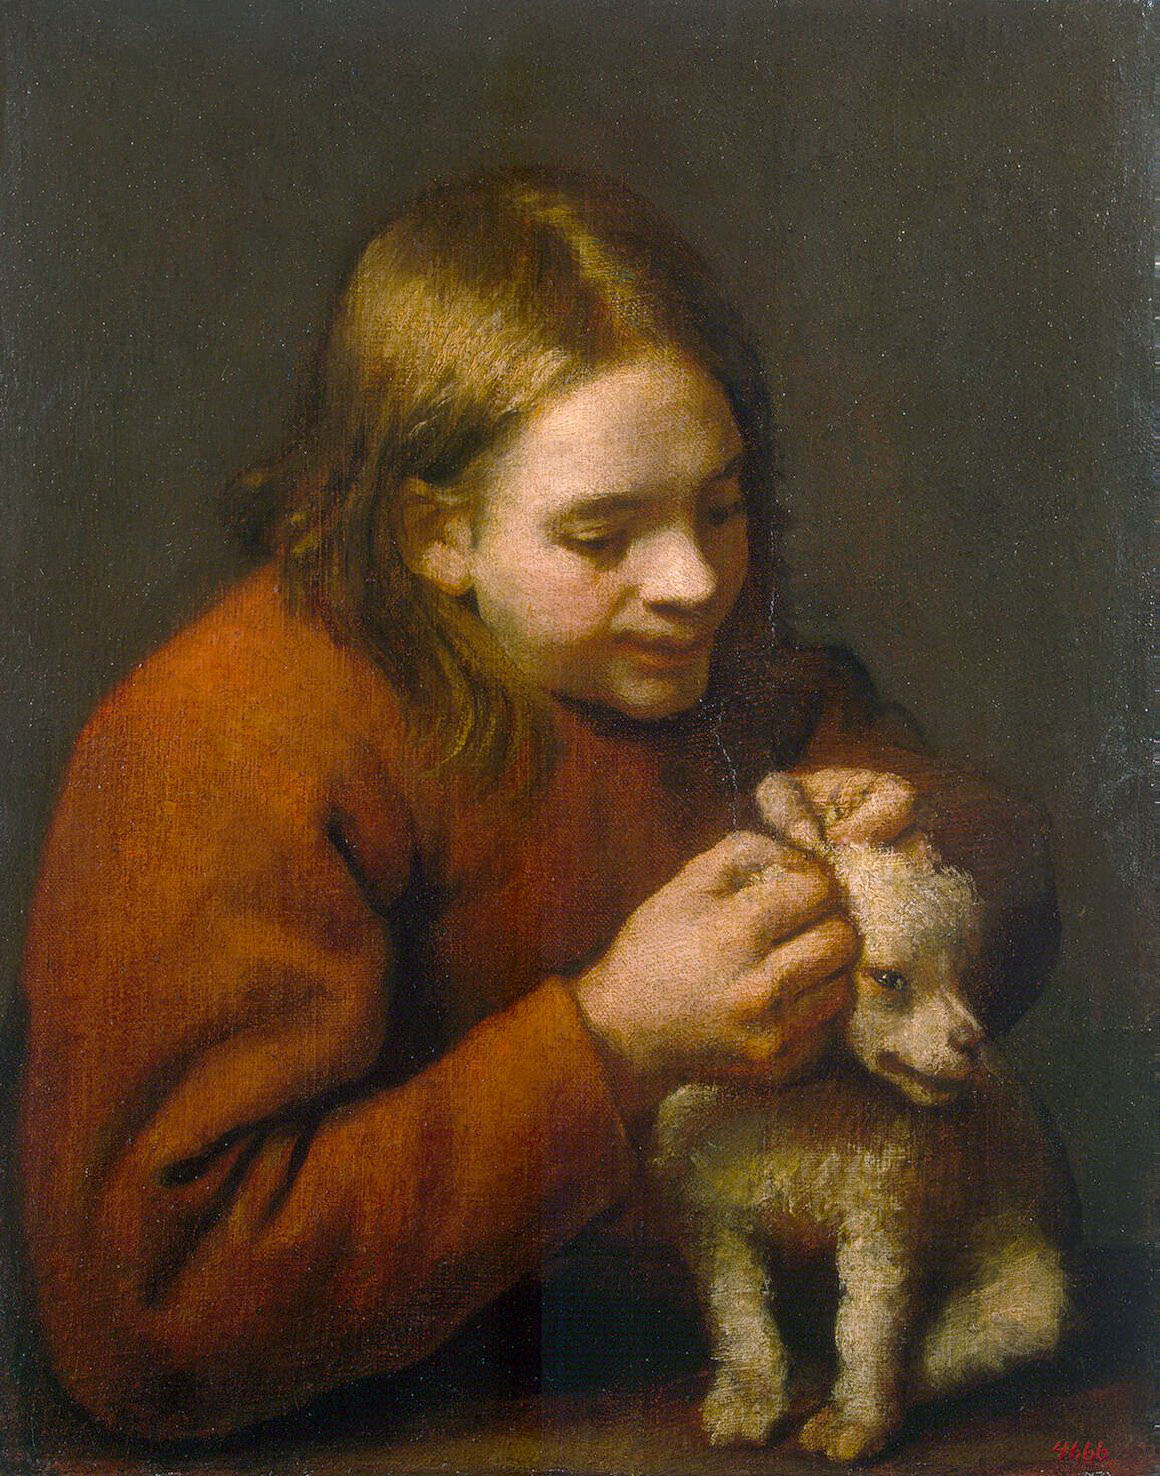 Педро Нуньес дель Вильявисенсио. "Мальчик, ищущий блох у собачки". 1650-е. Эрмитаж, Санкт-Петербург.